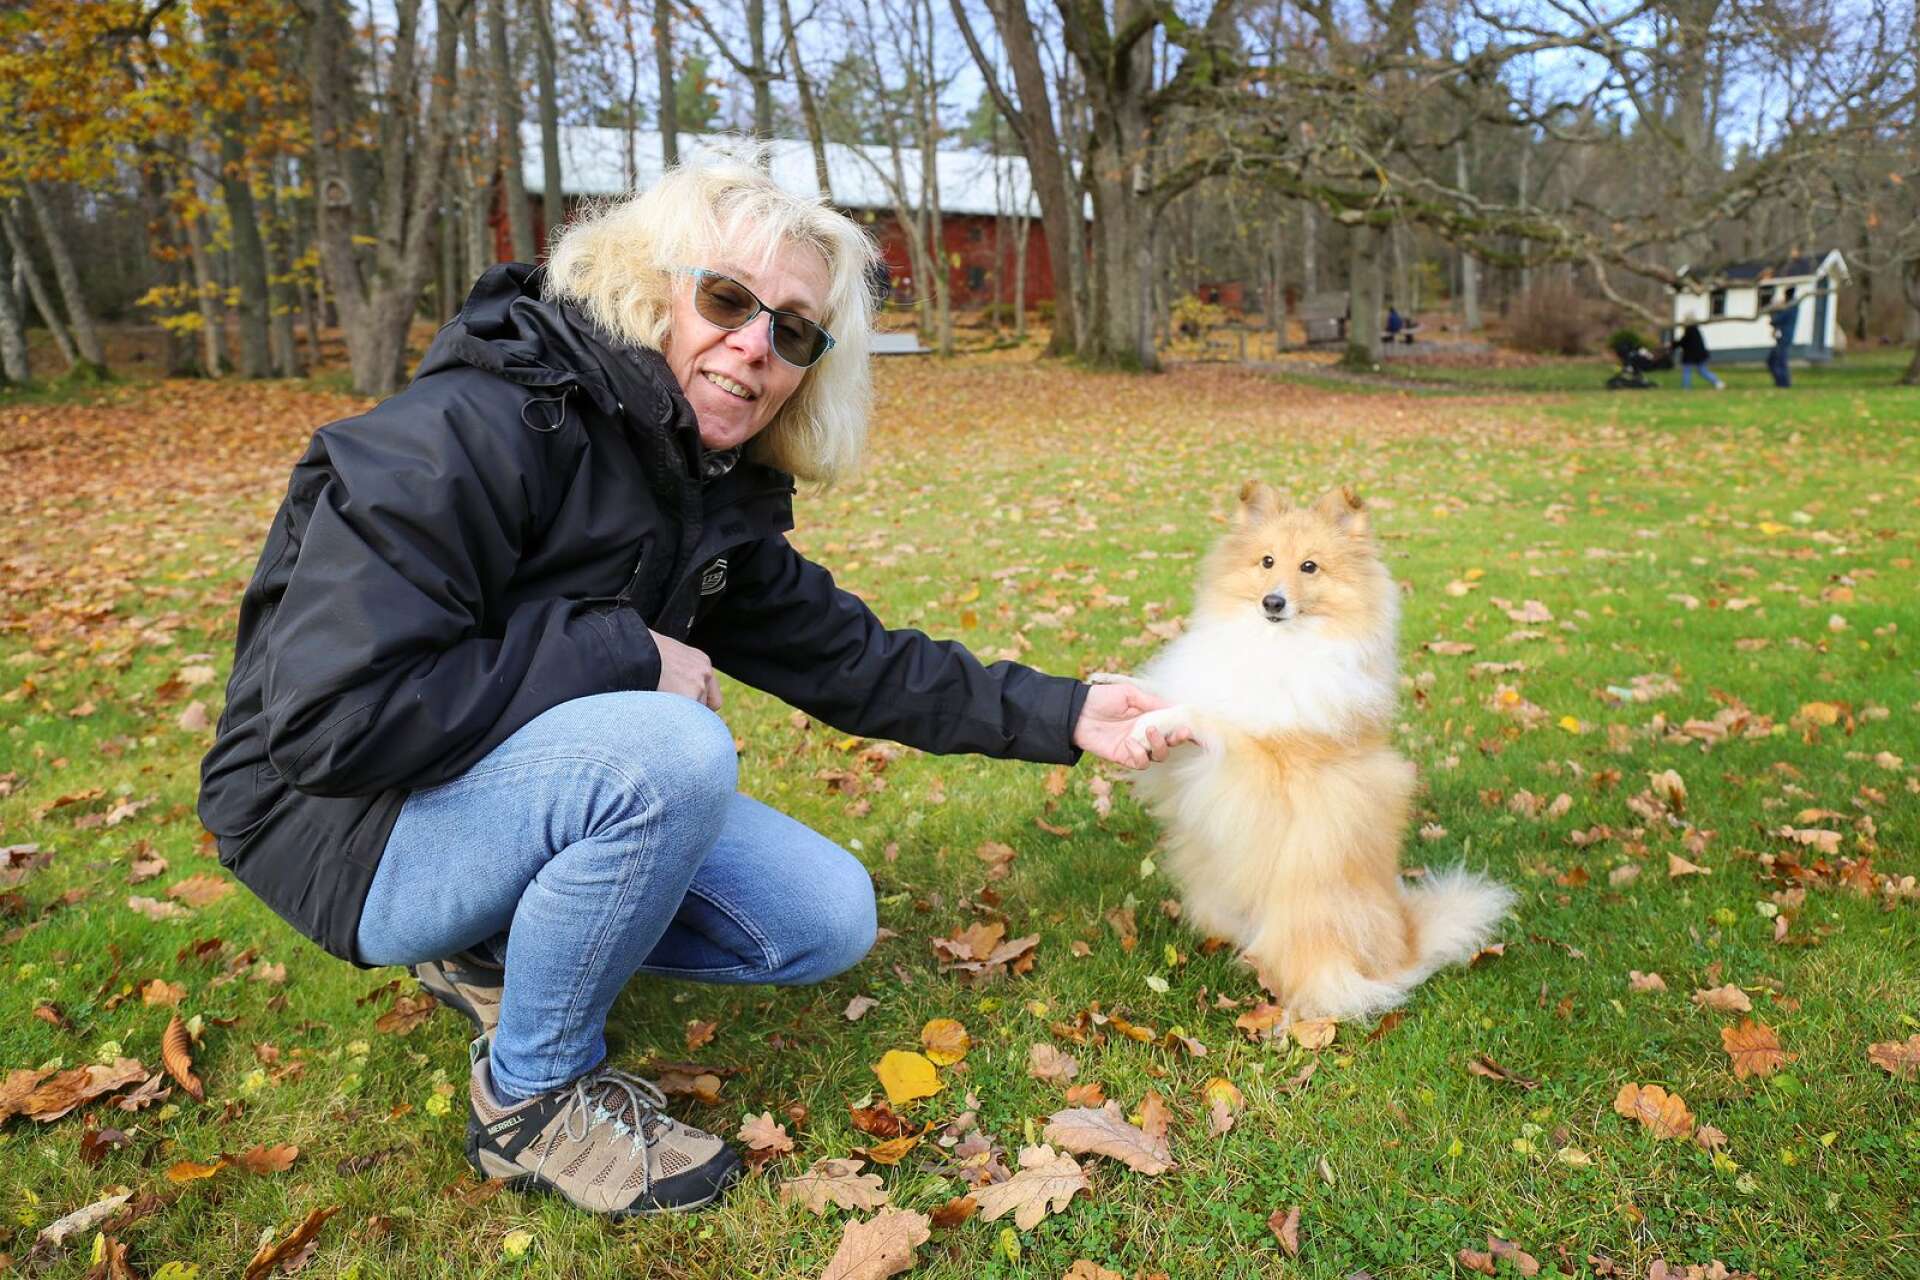 Championhunden Antons päls kräver 40 minuters borstning i veckan, och egentligen föredrar Anita hundar med lättskött päls. Men Anton valde hon med hjärtat, berättar hon.